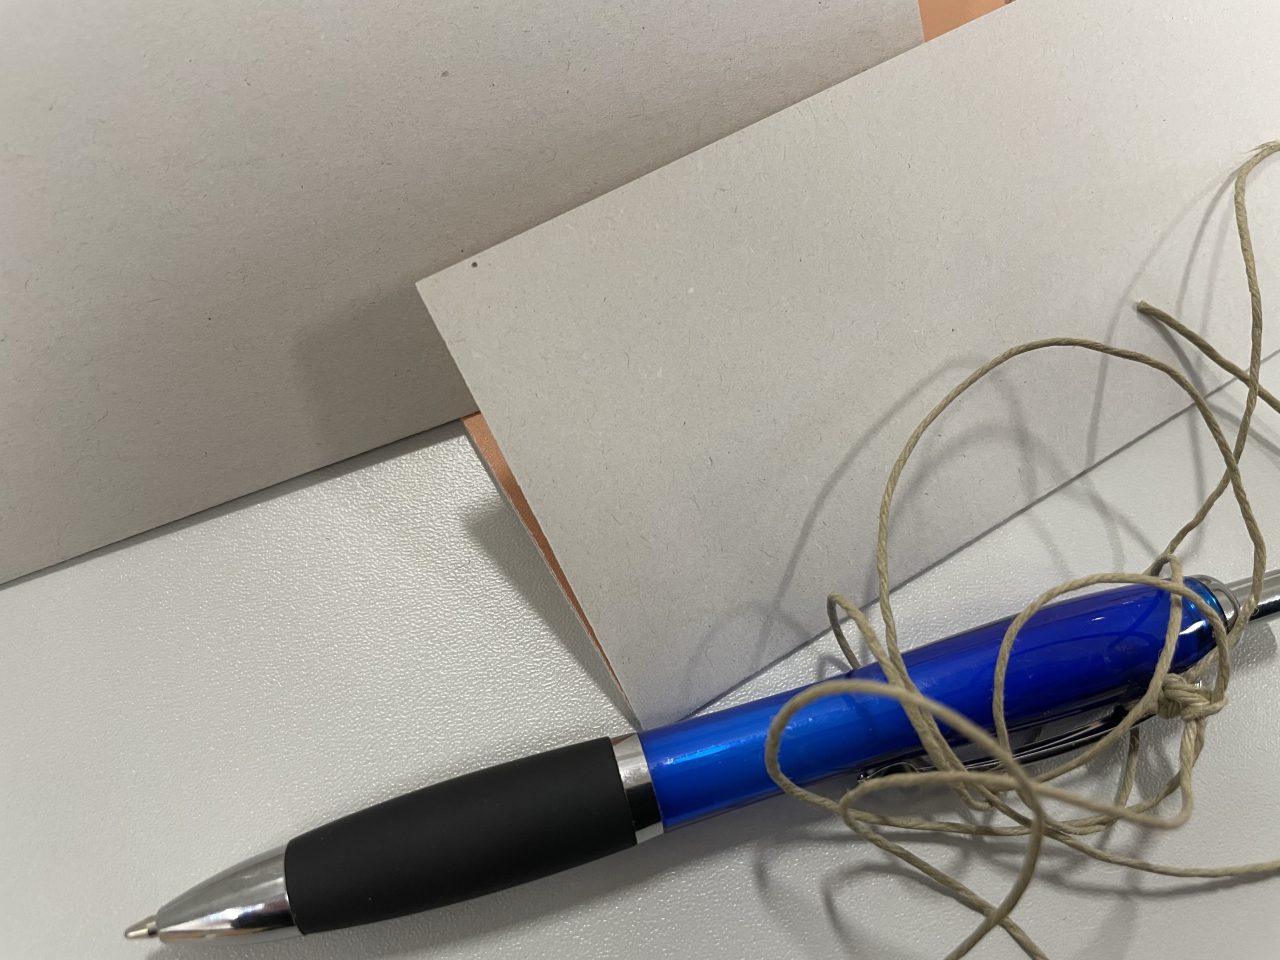 gefaltete Wahlzettel mit einem angebundenen Kugelschreiber